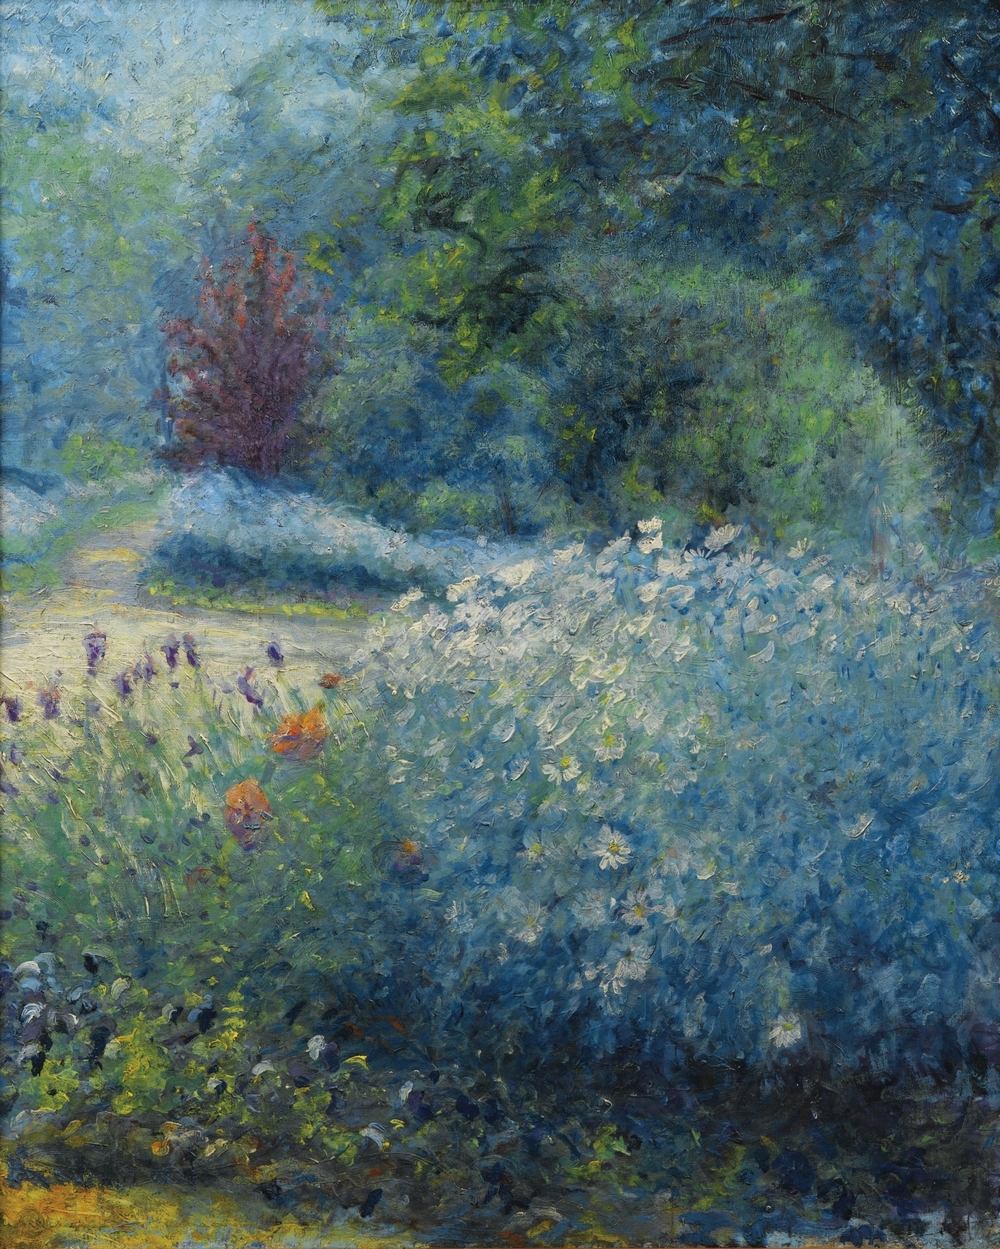 Pintura impresionista de Blanche Hoschedé-Monet en el jardín de Monet en Giverny